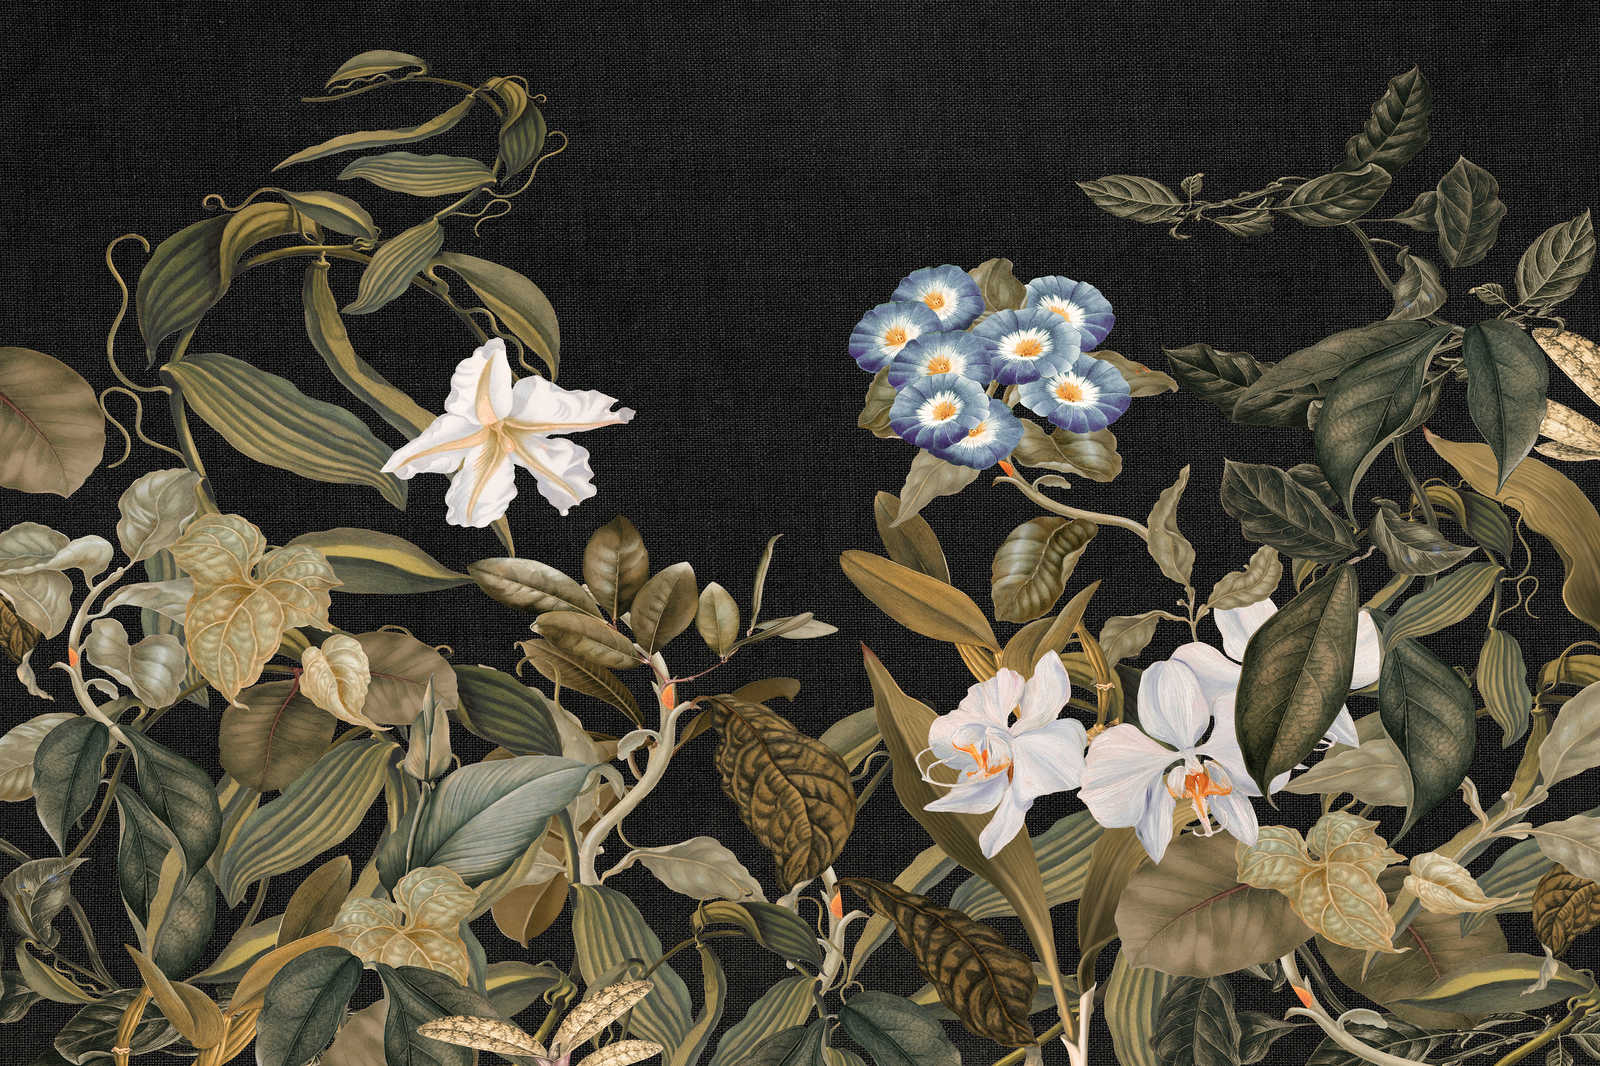             Botanical Leinwandbild mit Orchideen & Blätter-Motiv – 1,20 m x 0,80 m
        